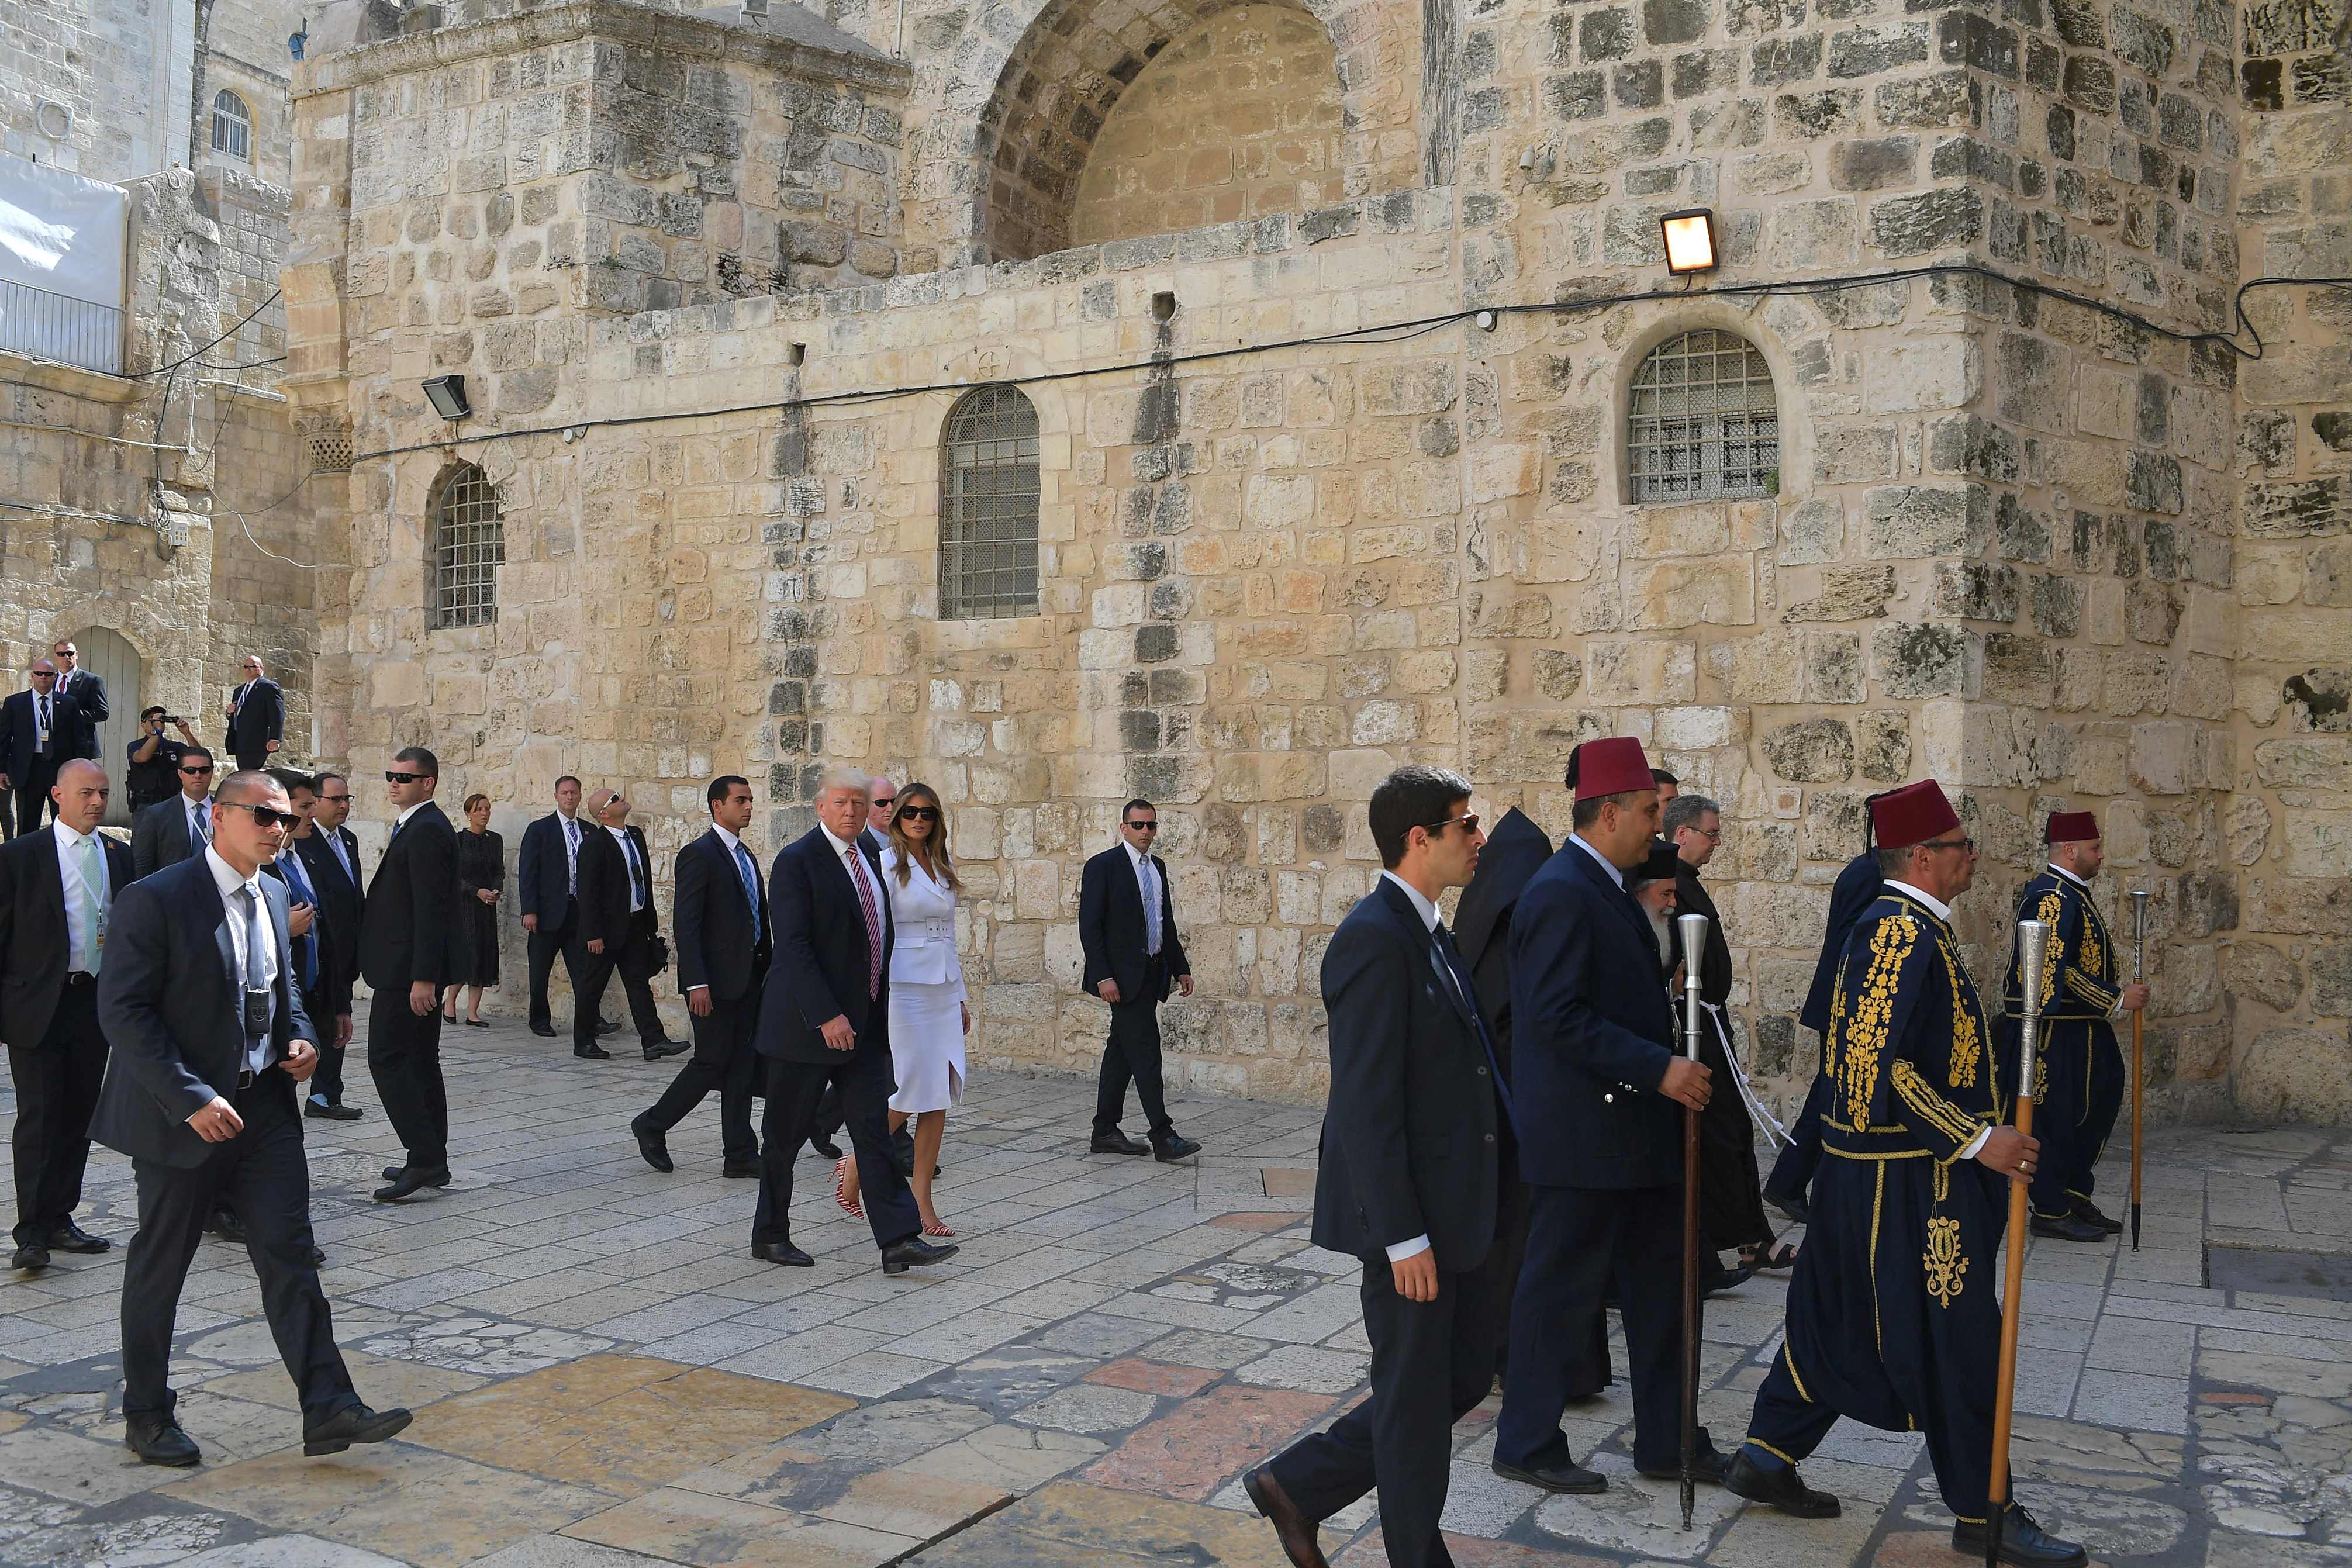 حراسة أمنية مشددة خلال جولة ترامب فى القدس القديمة